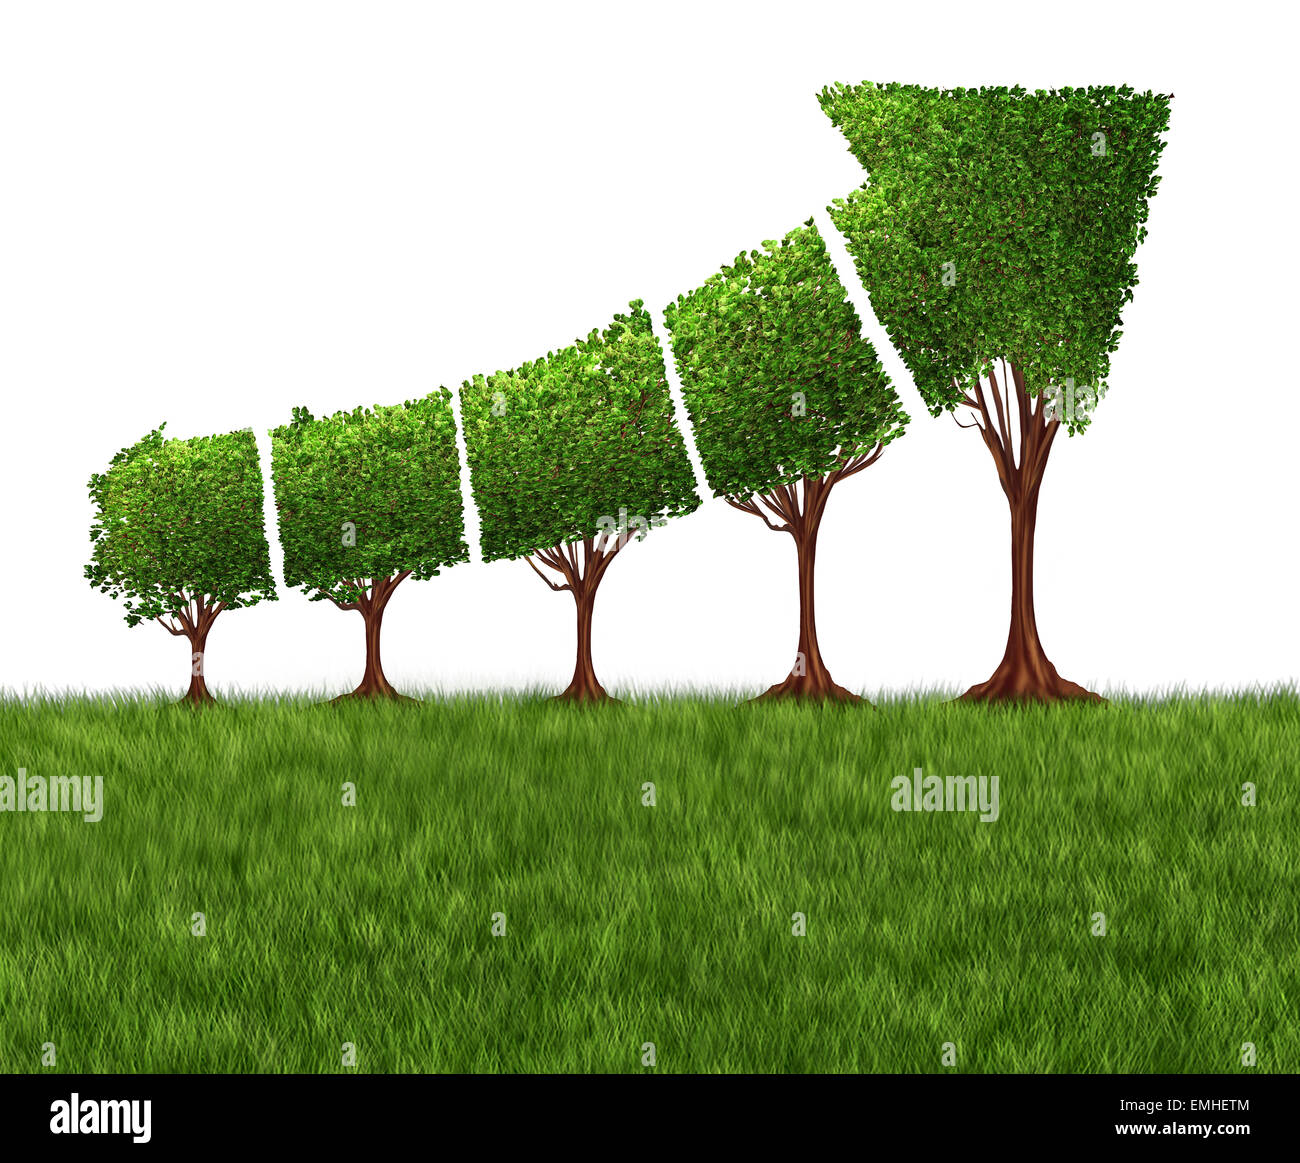 Economica diagramma grafico e eco o ecologica concetto di sviluppo come un gruppo di alberi provenienti insieme la forma di una freccia rivolta verso l'alto come una metafora di successo per i profitti e la crescita. Foto Stock